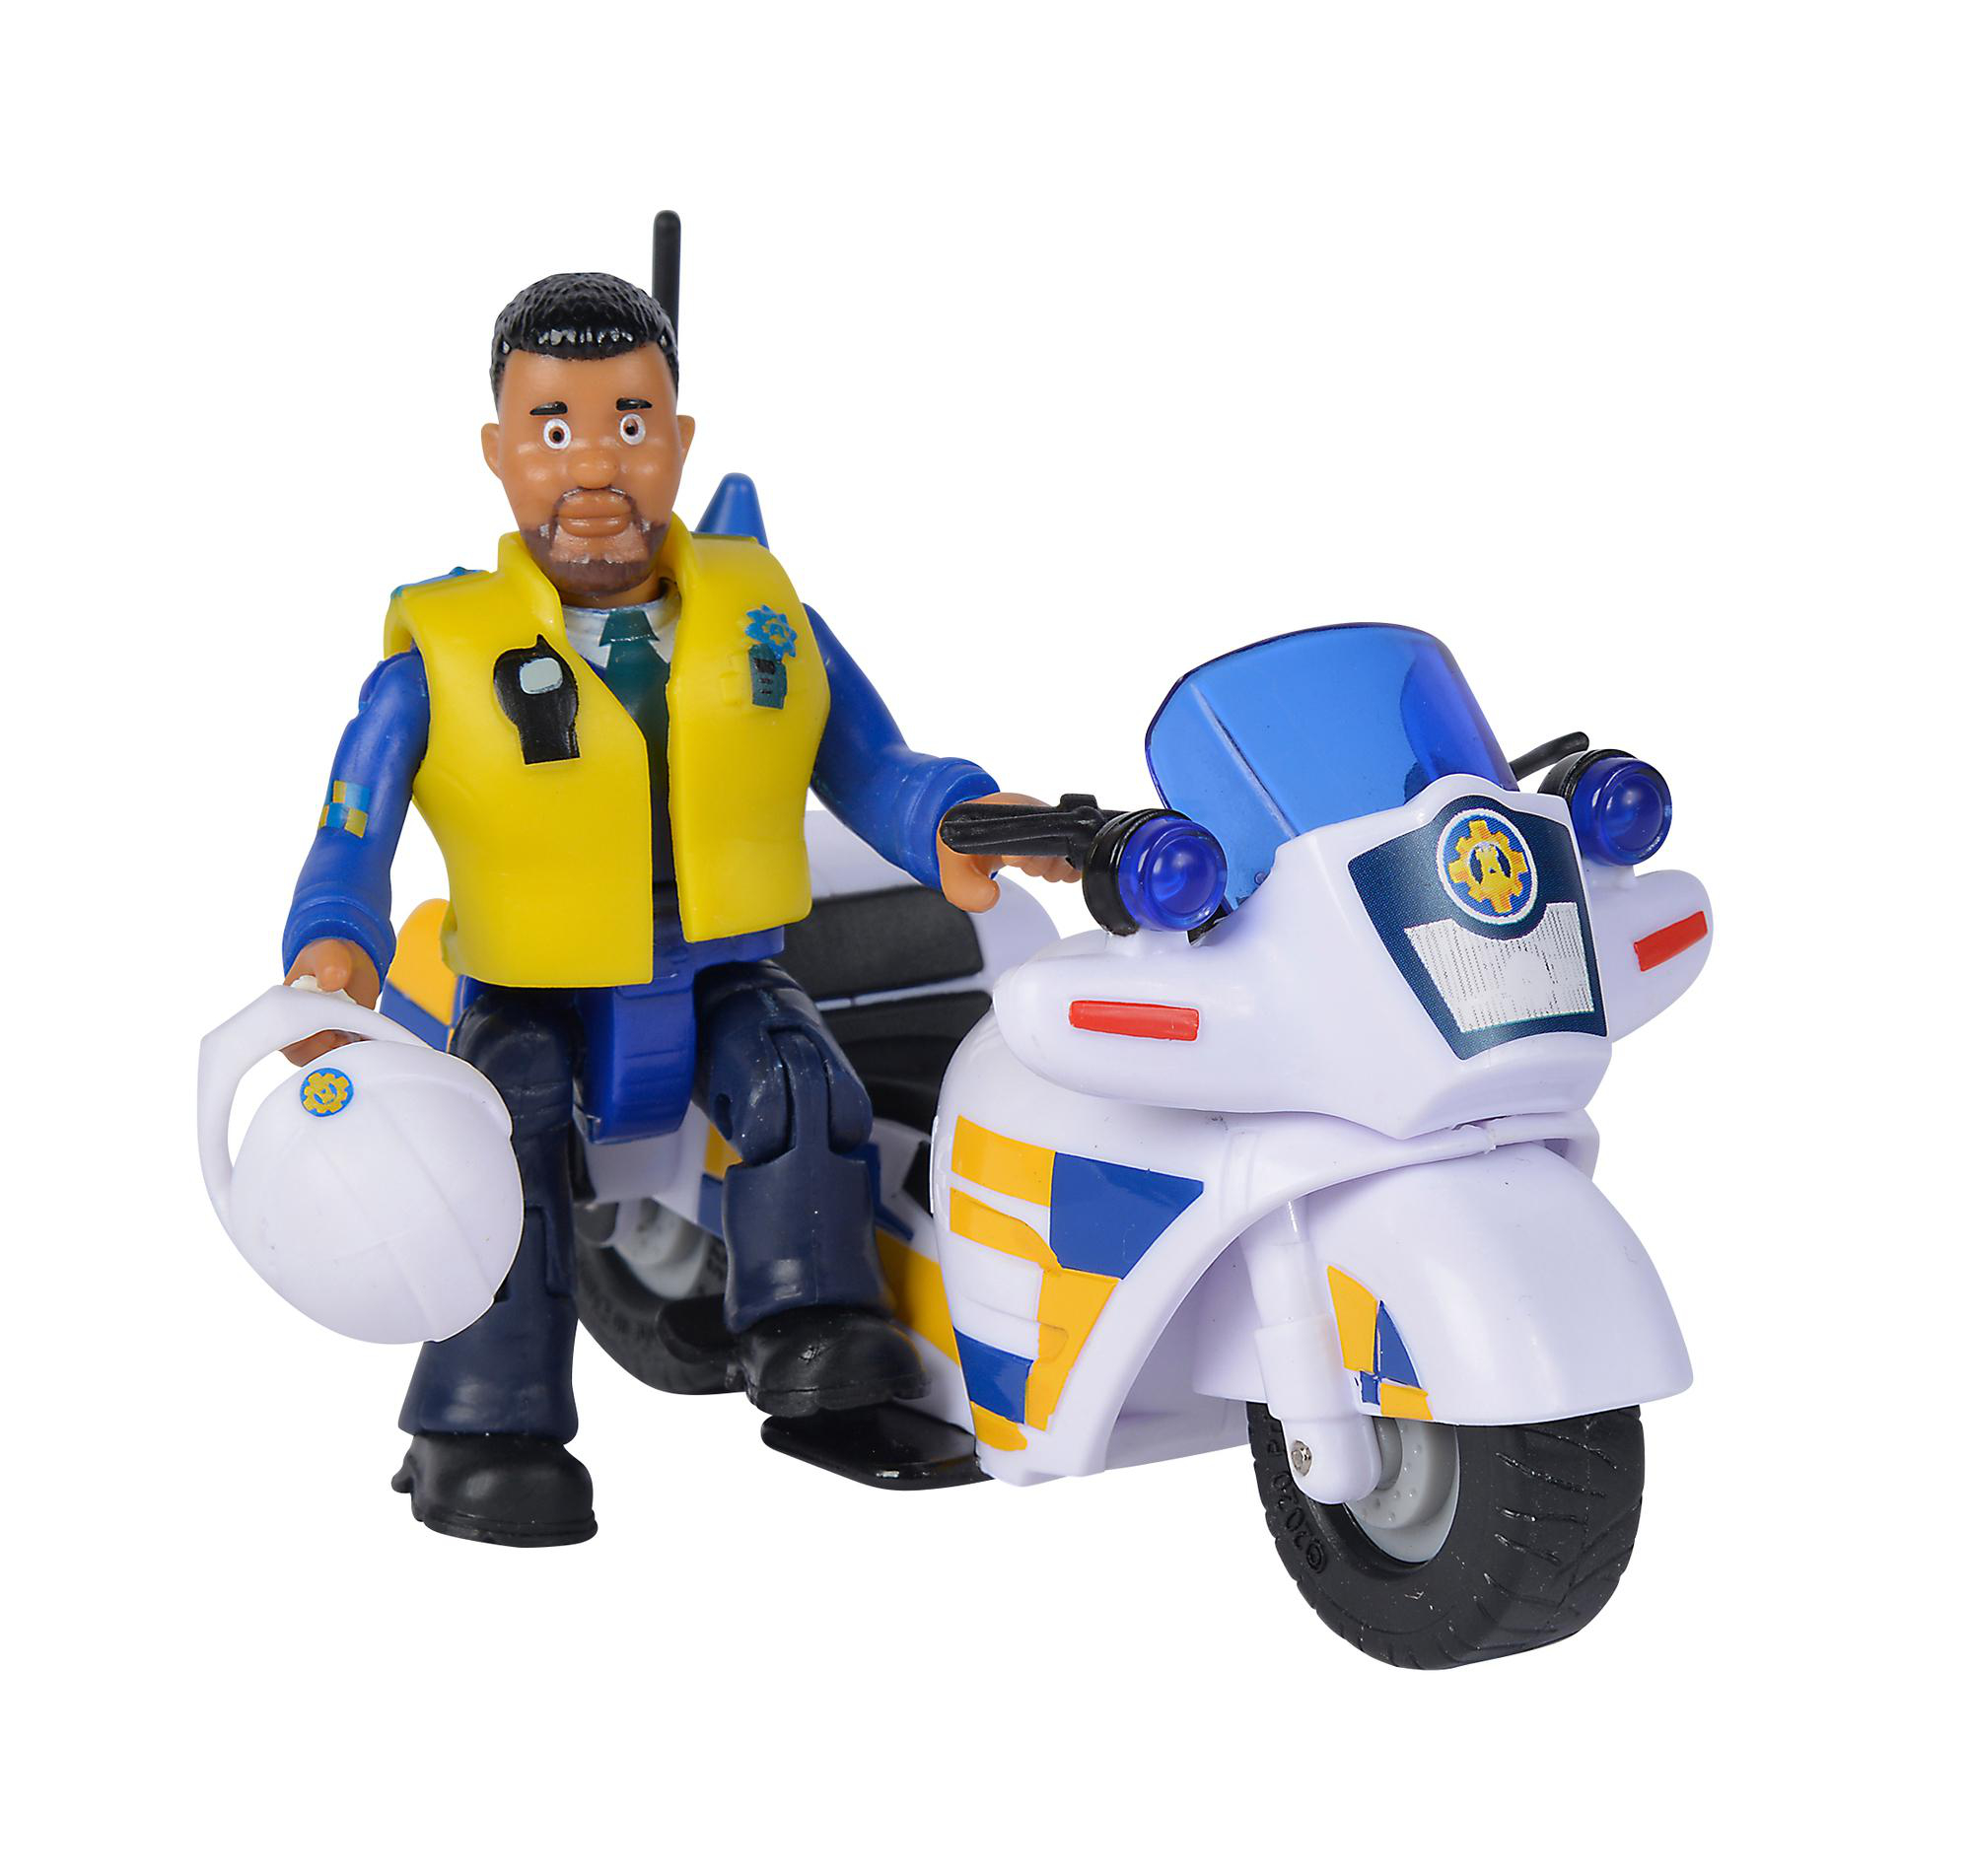 mit Motorrad Mehrfarbig SIMBA TOYS Spielset Polizei Feuerwehrmann Sam Figur